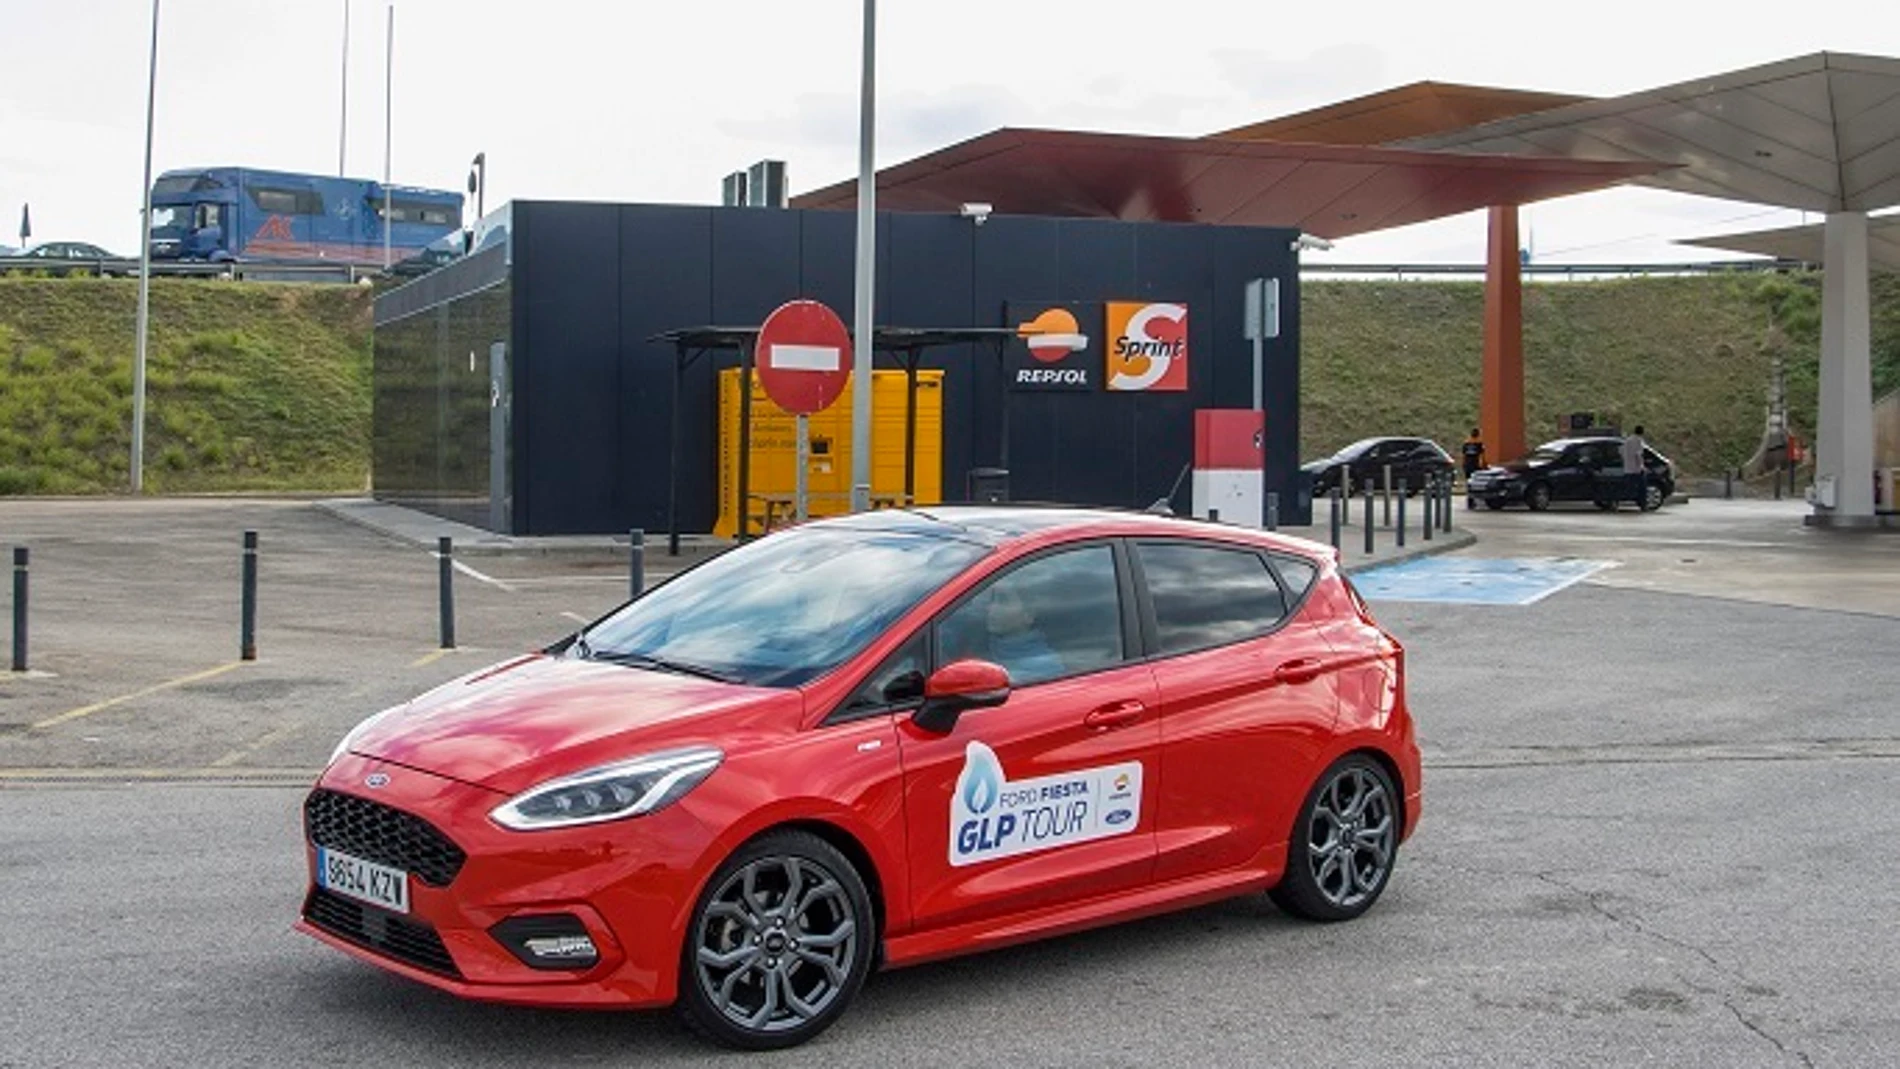 Economía/Motor.- Comienza el Ford Fiesta GLP Tour para promover la movilidad sostenible con autogas